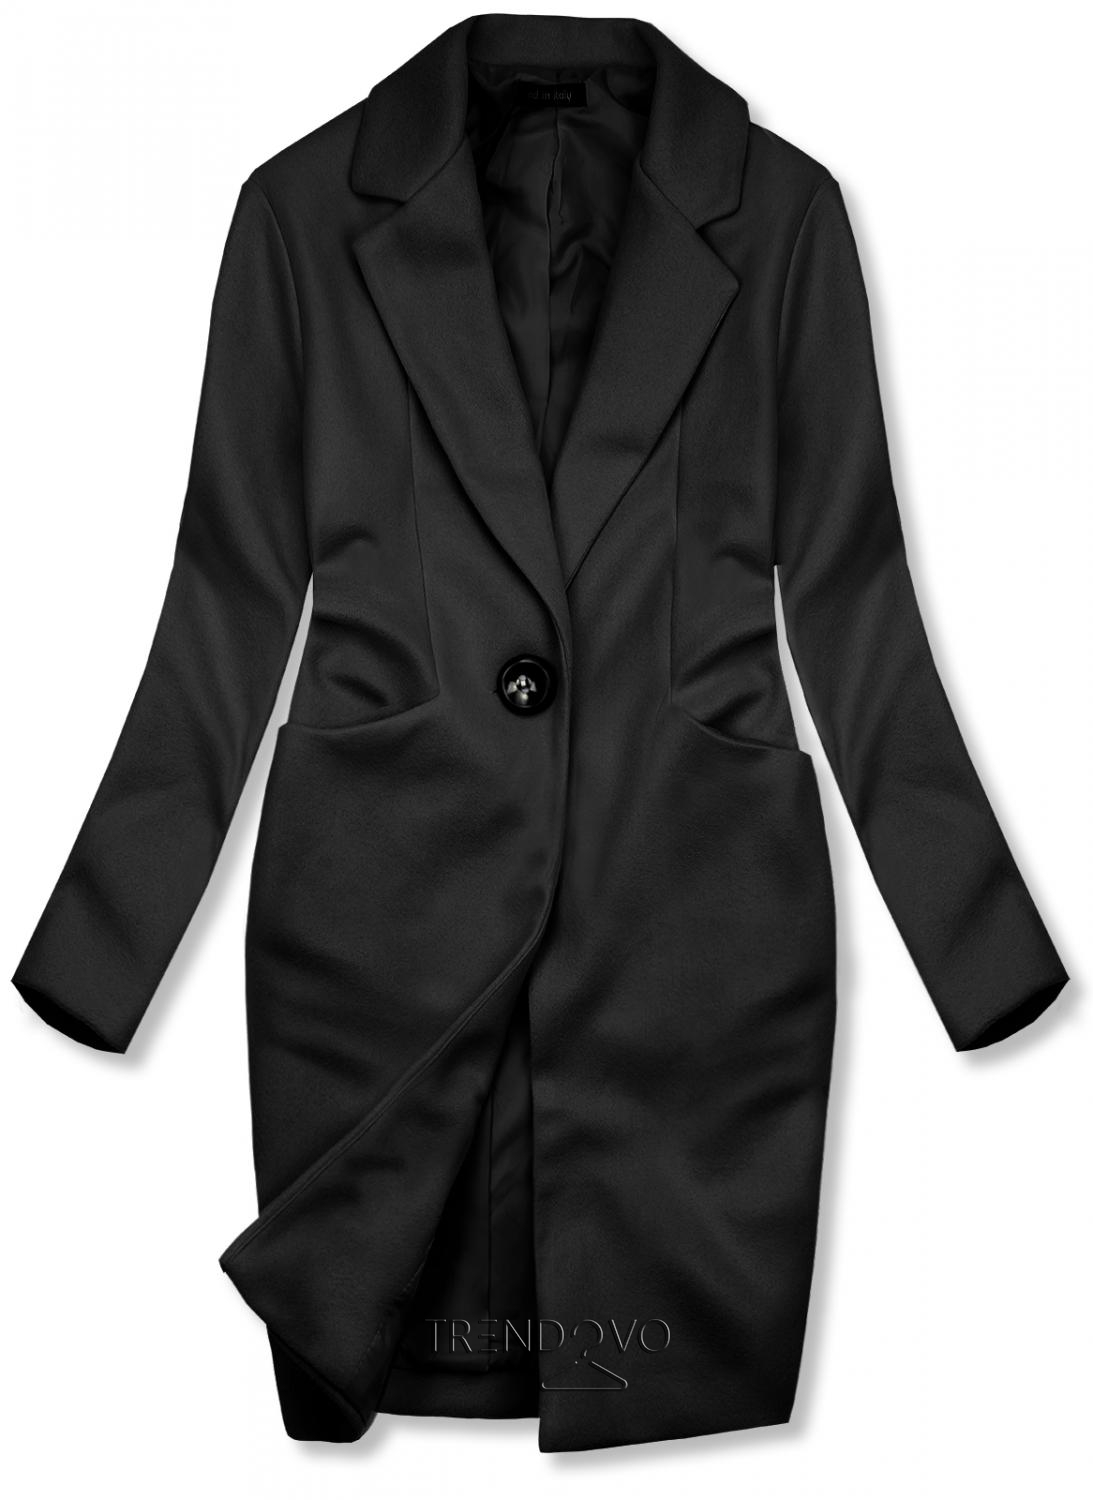 Čierny jarný kabát so zapínaním na gombík